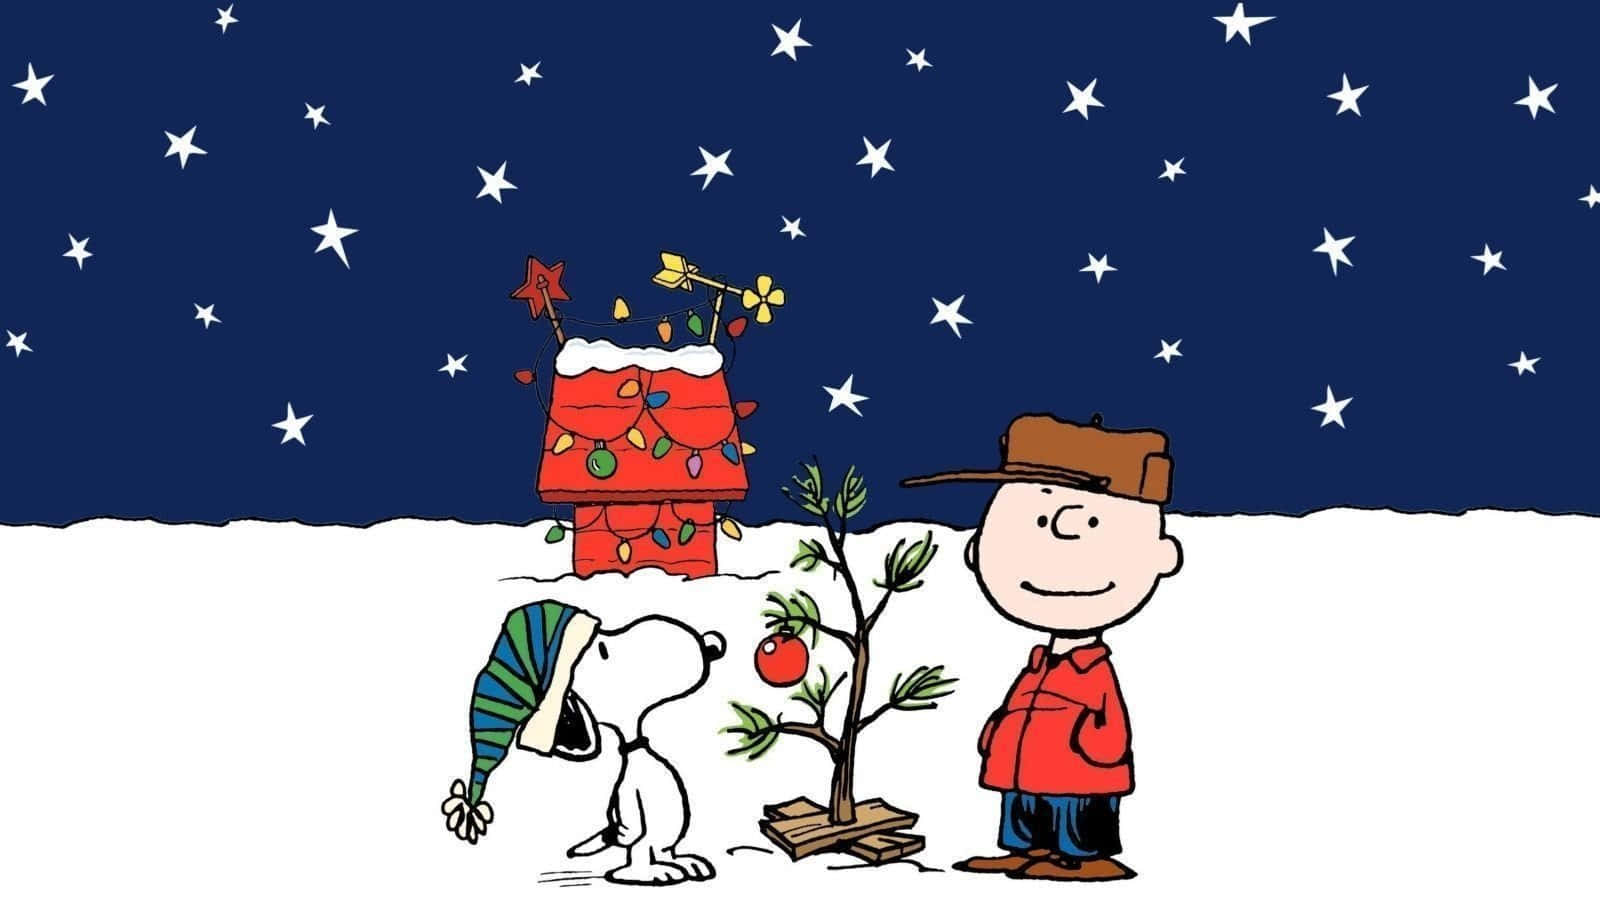 Fondode Pantalla Divertido De Navidad Para Zoom De Snoopy Y Charlie Brown